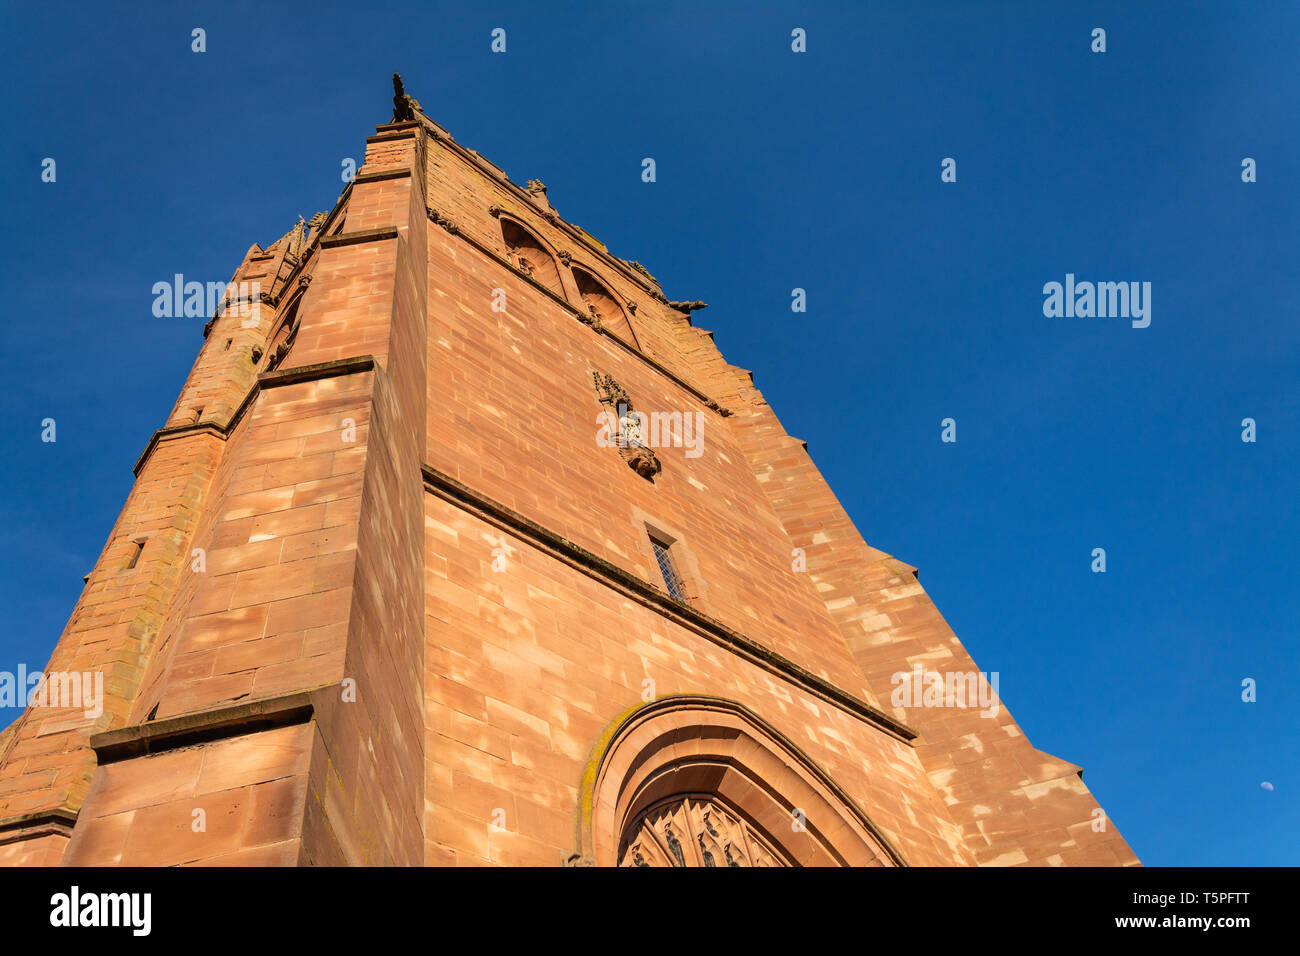 Des détails architecturaux de l'église St Leonard's, Bridgnorth, UK. Banque D'Images